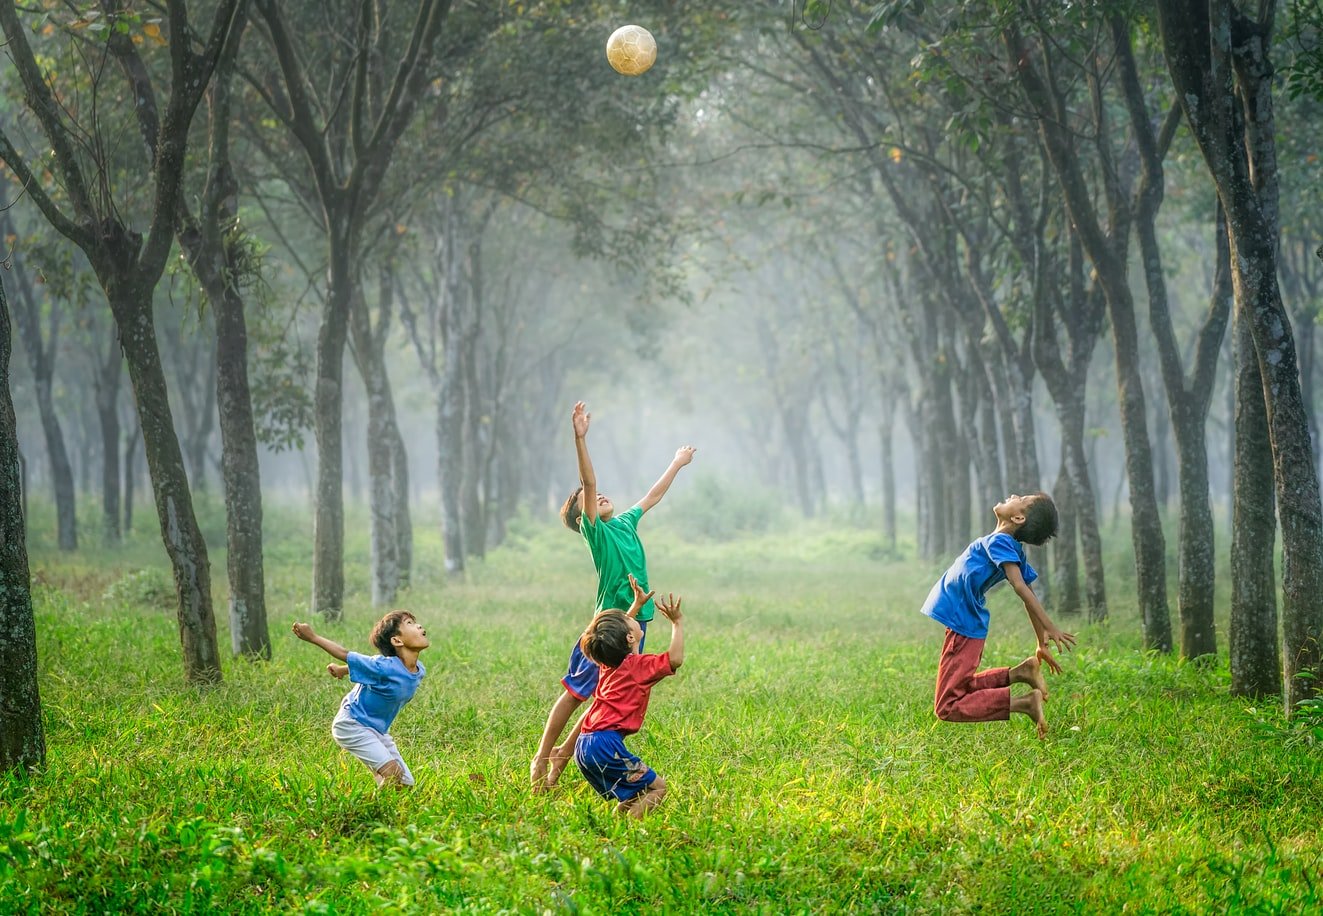 Crianças brincando com uma bola em um parque.